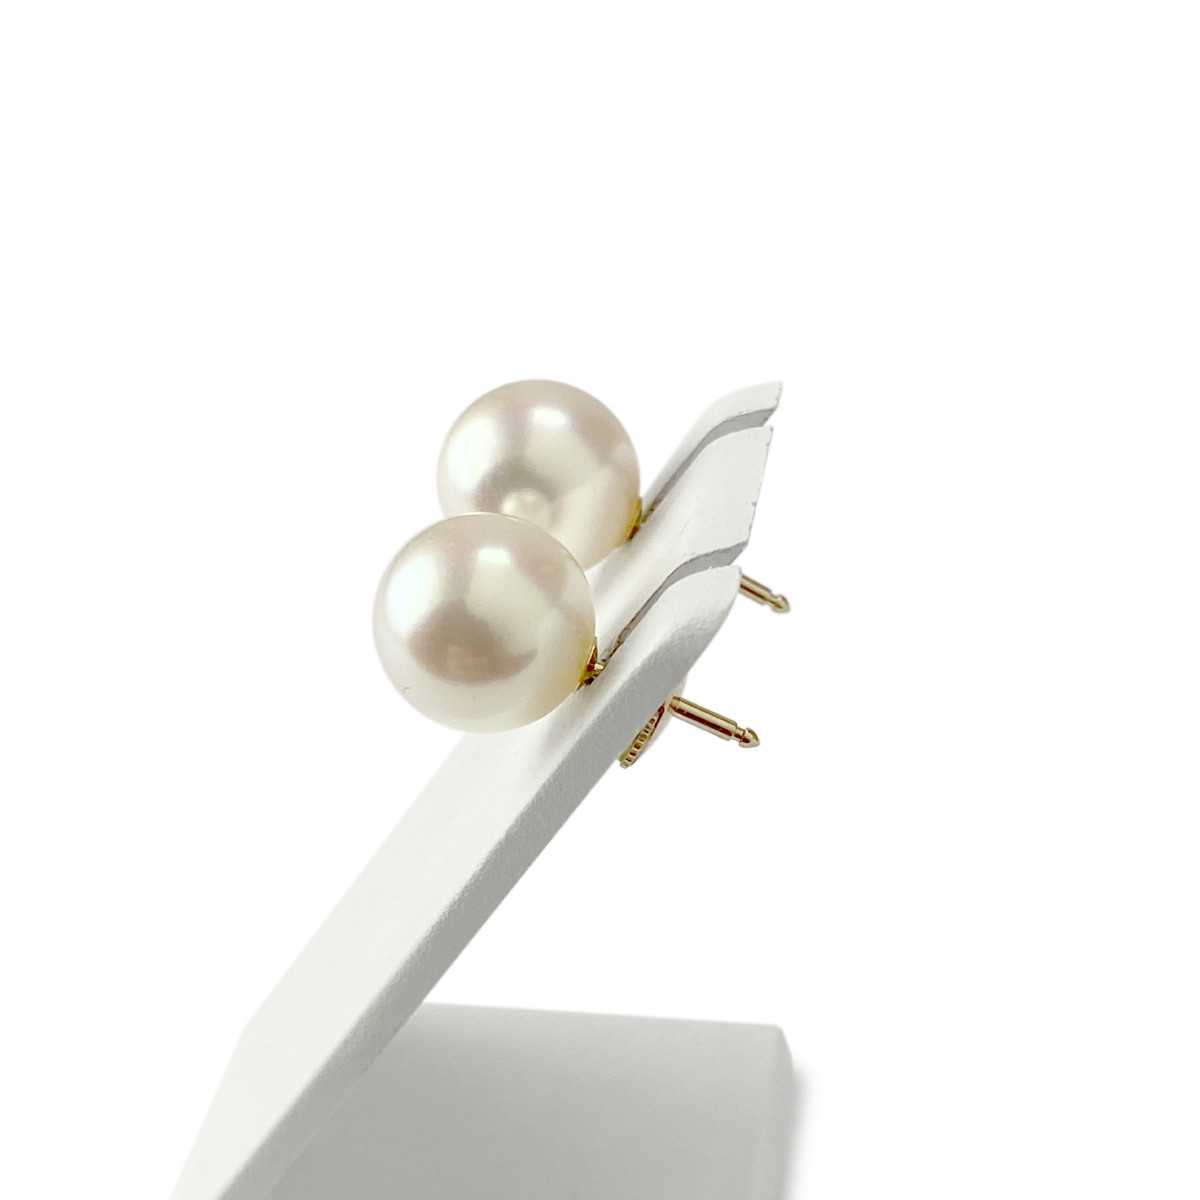 Boucles d'oreilles d'occasion or 750 jaune perles de culture - vue 2